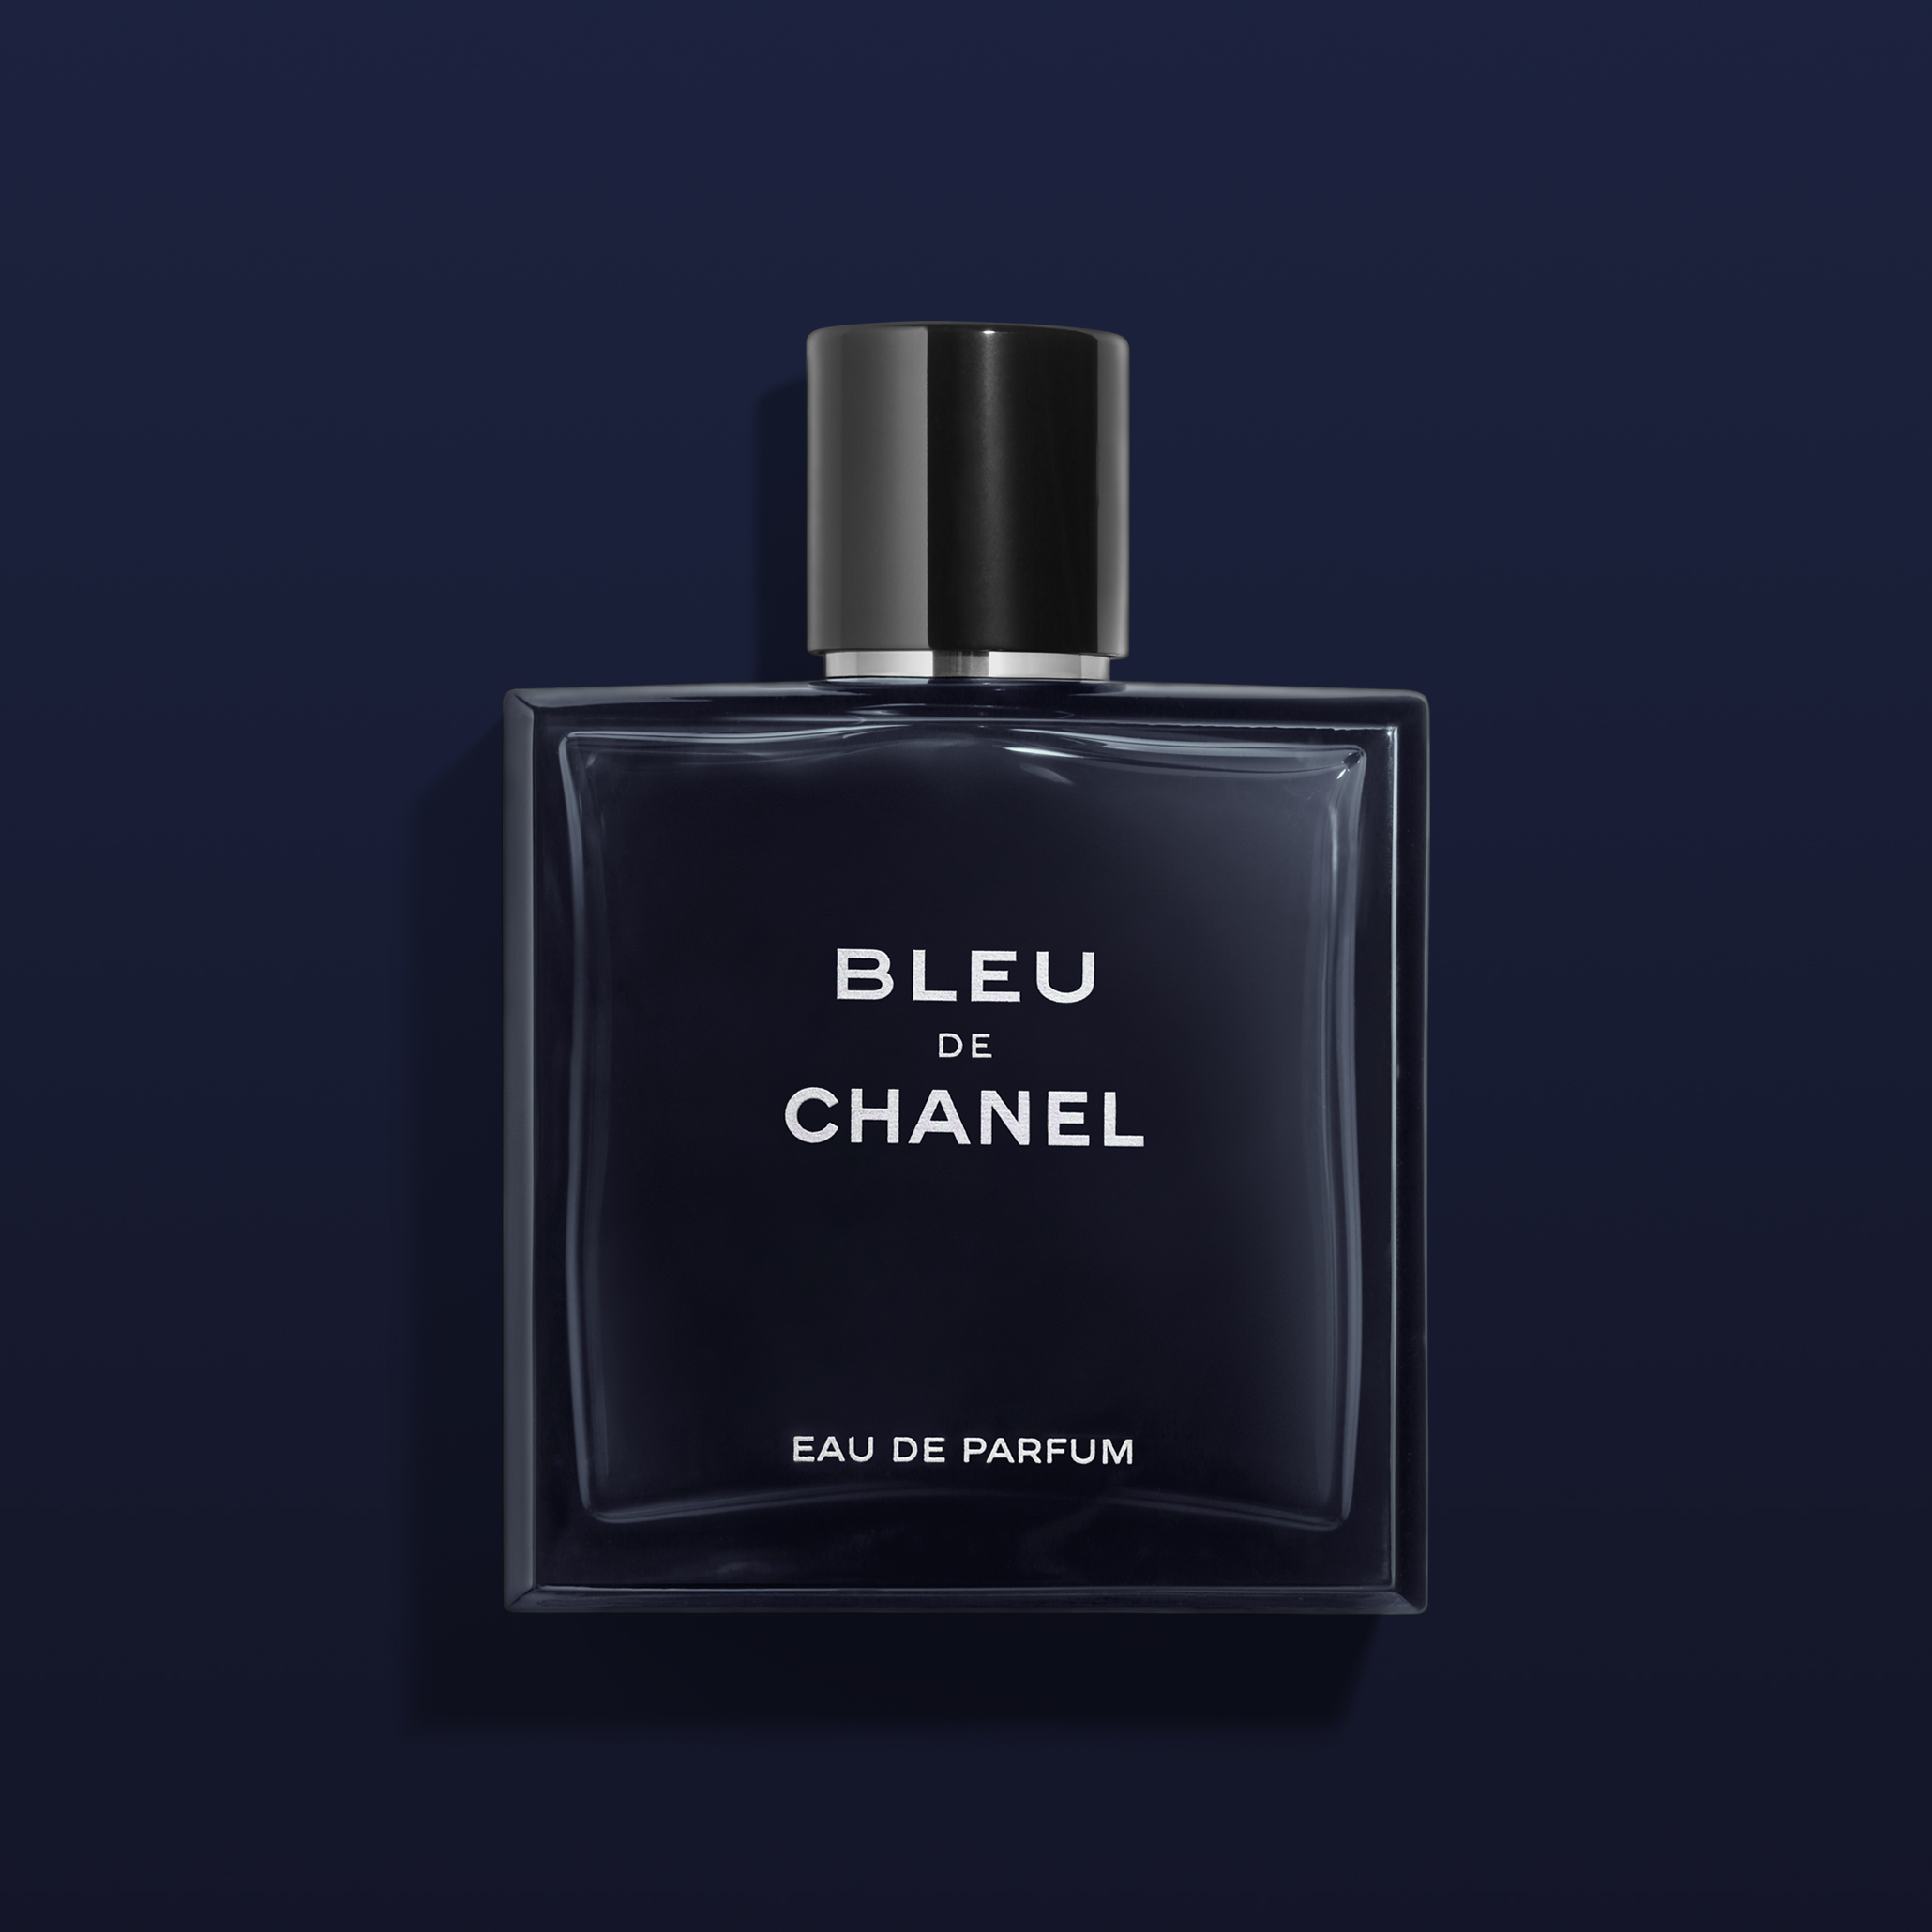 Chanel – Bleu de Chanel Aftershave Lotion 100ml – Bellucci parfimerija